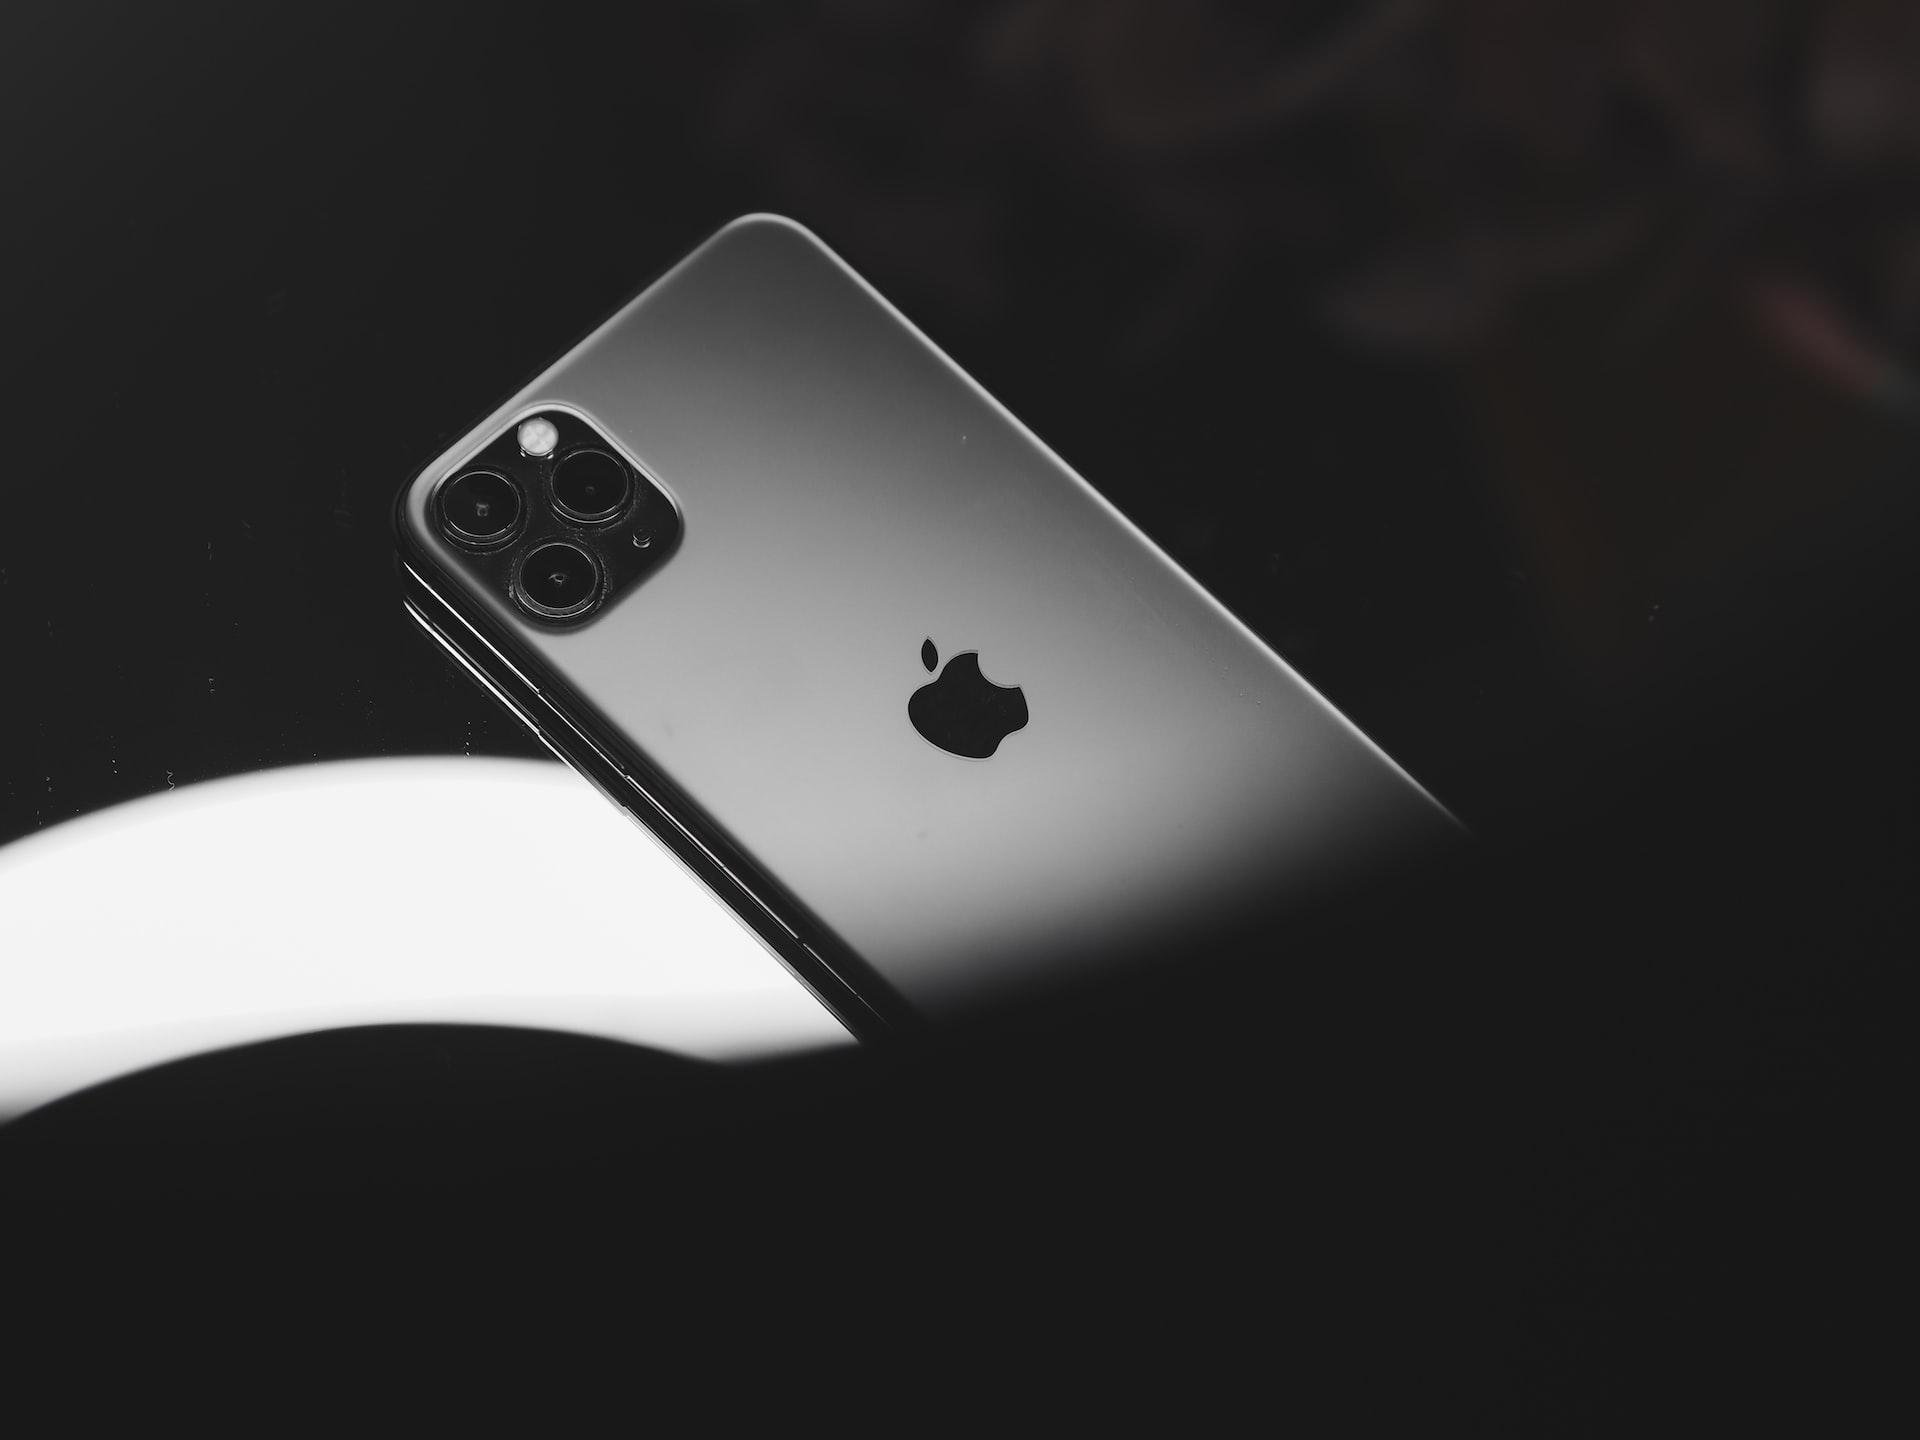 Em 2017, a Qualcomm alegou que os iPhones infringiram o uso de tecnologias móveis desenvolvidas pela empresa.